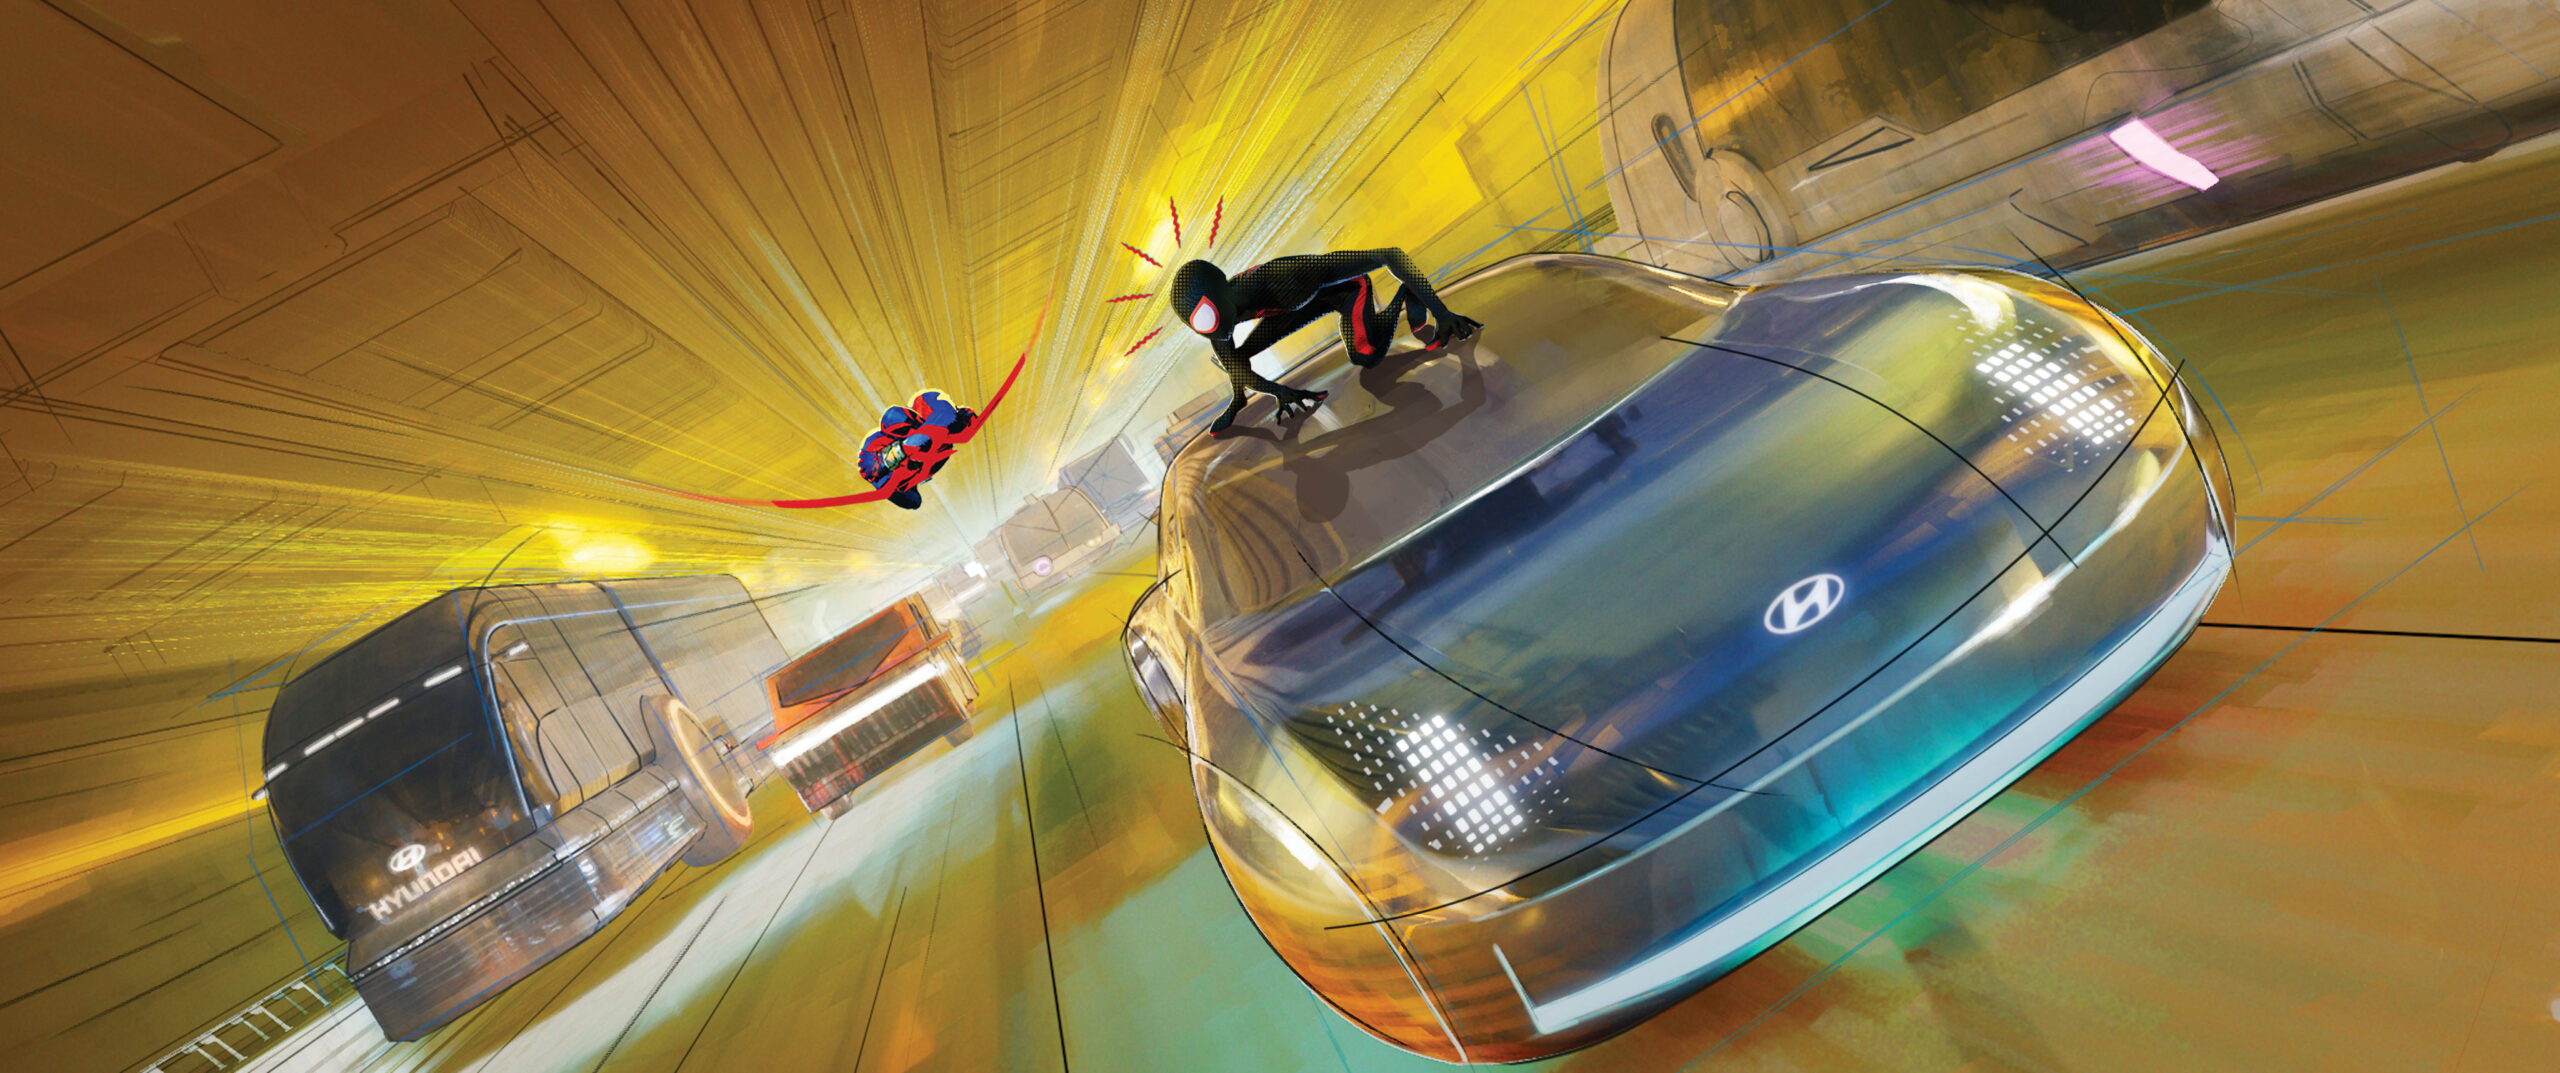 Hyundai film Spider-Man Across the Spider-Verse